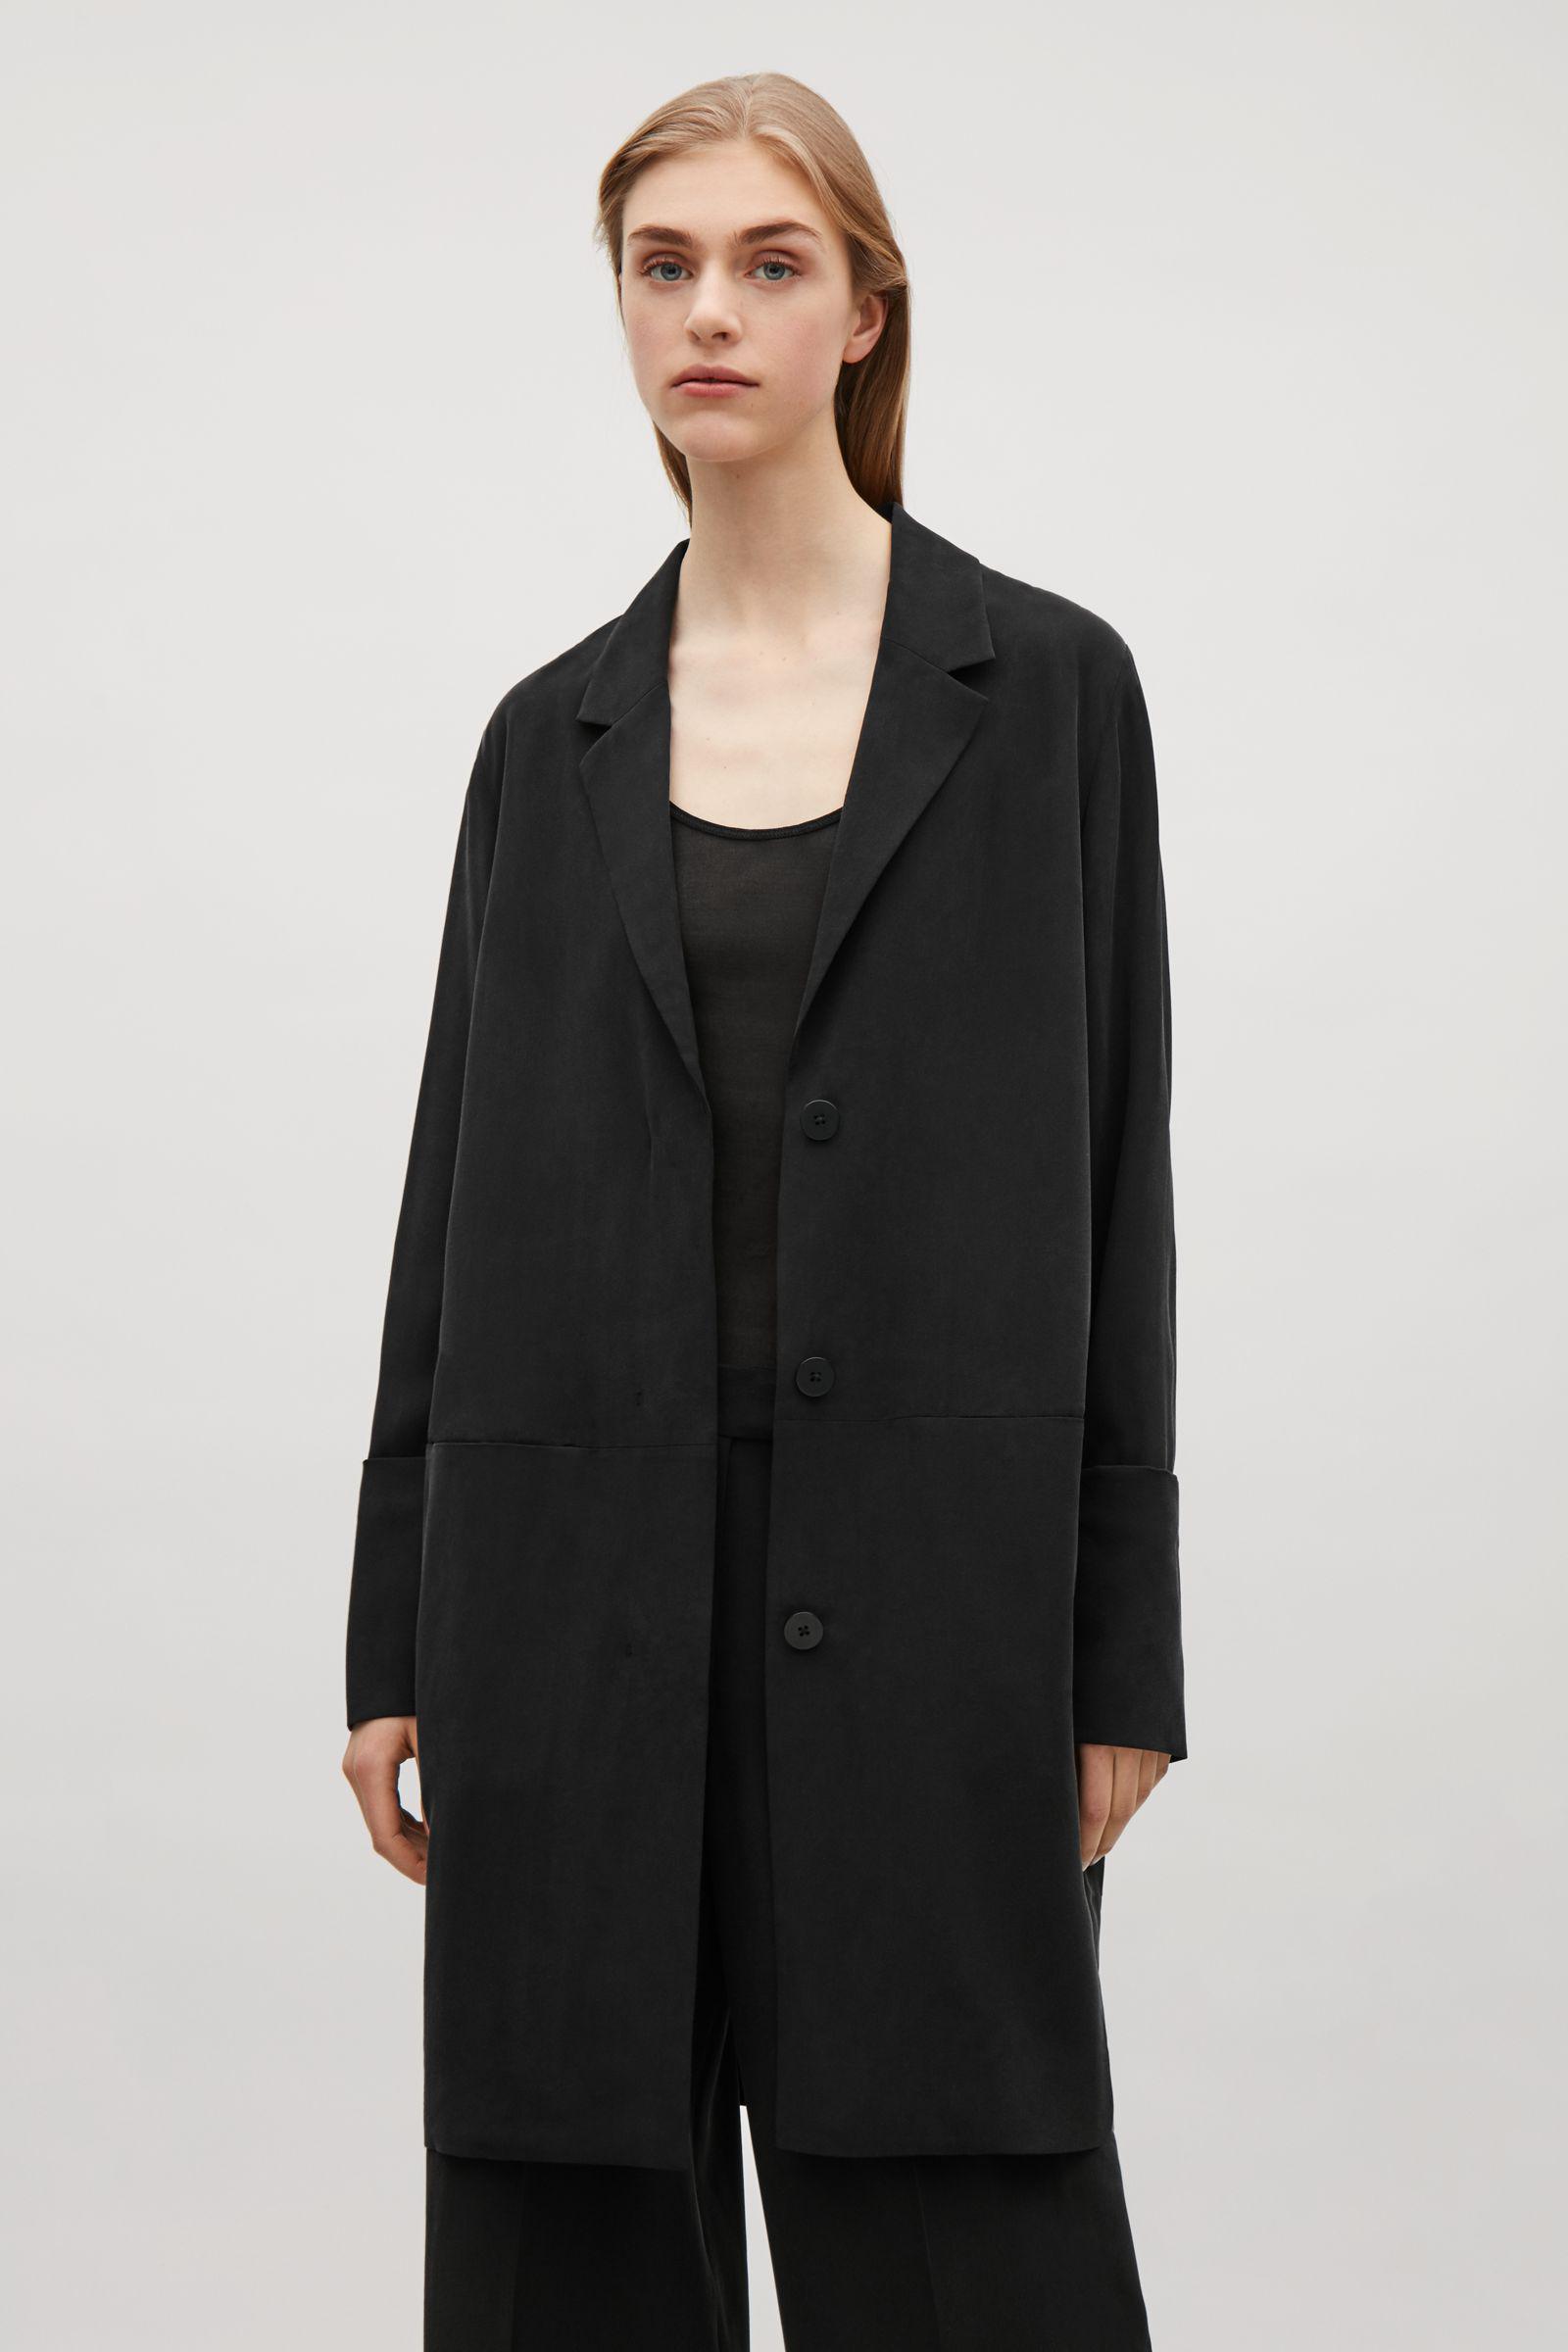 COS Long Silk Blazer in Black | Lyst UK